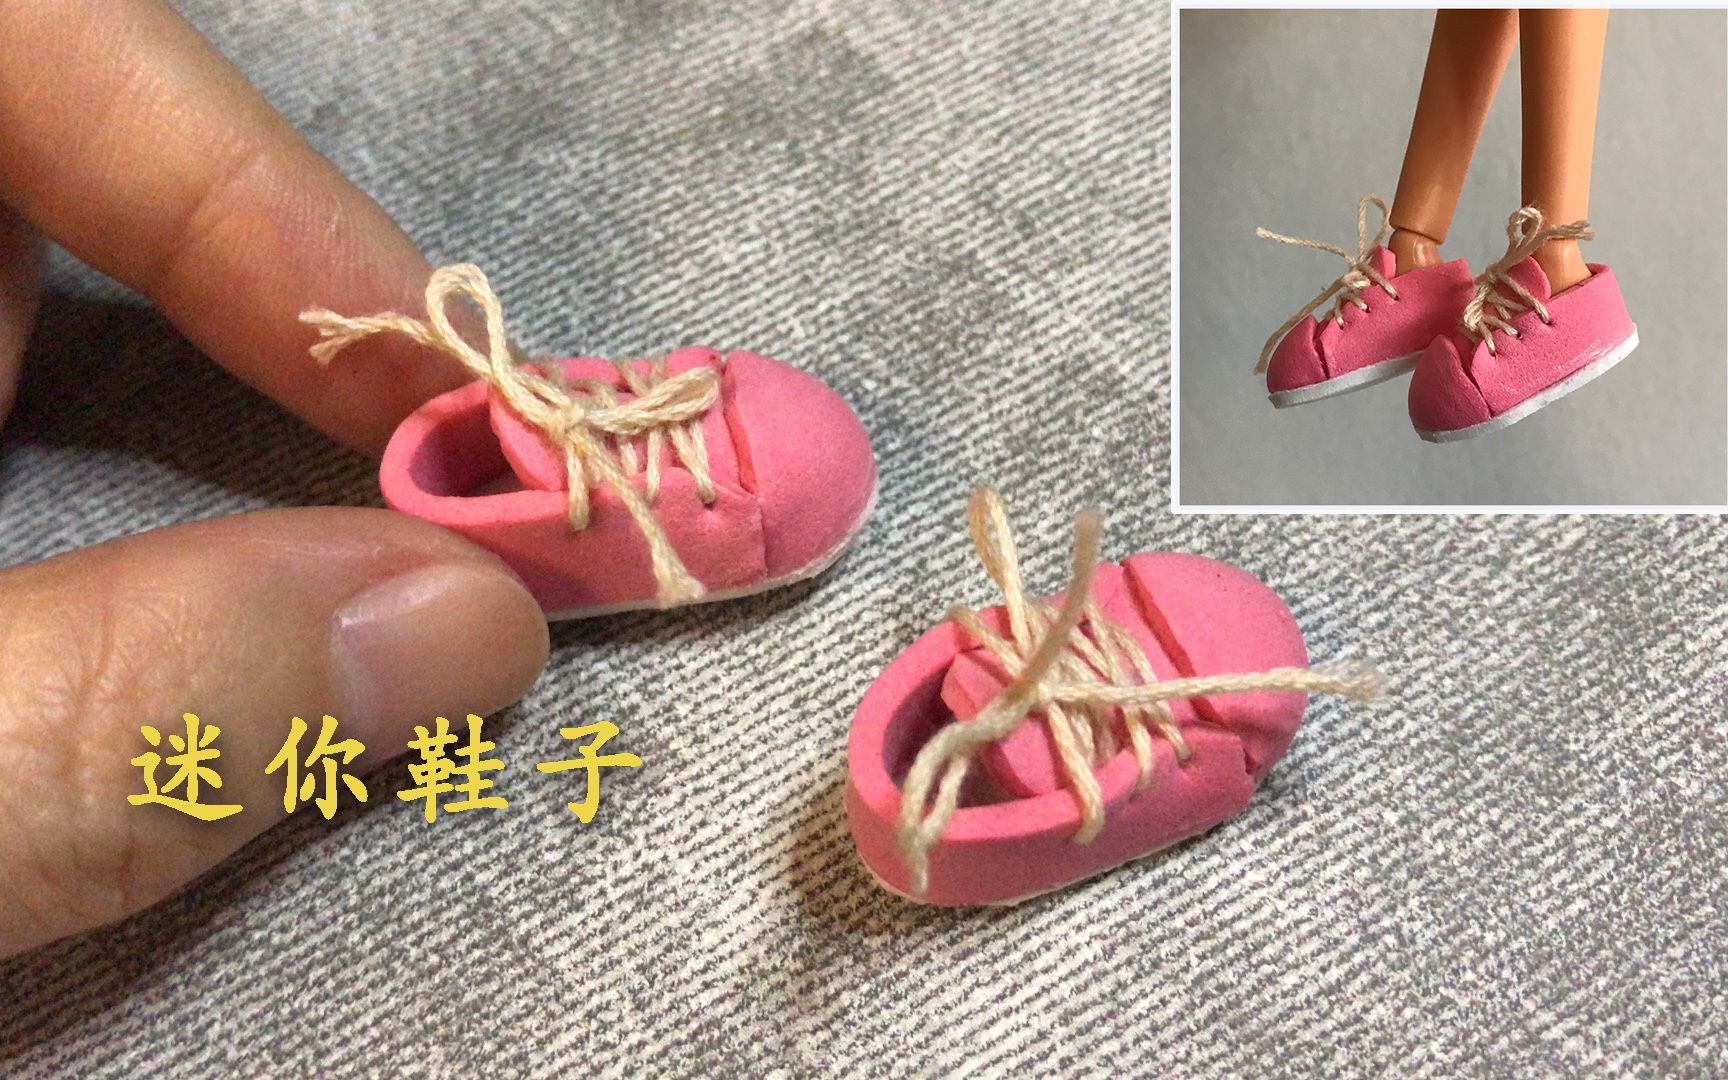 Kristyn doll - Barbie in the Pink Shoes Photo (32780614) - Fanpop